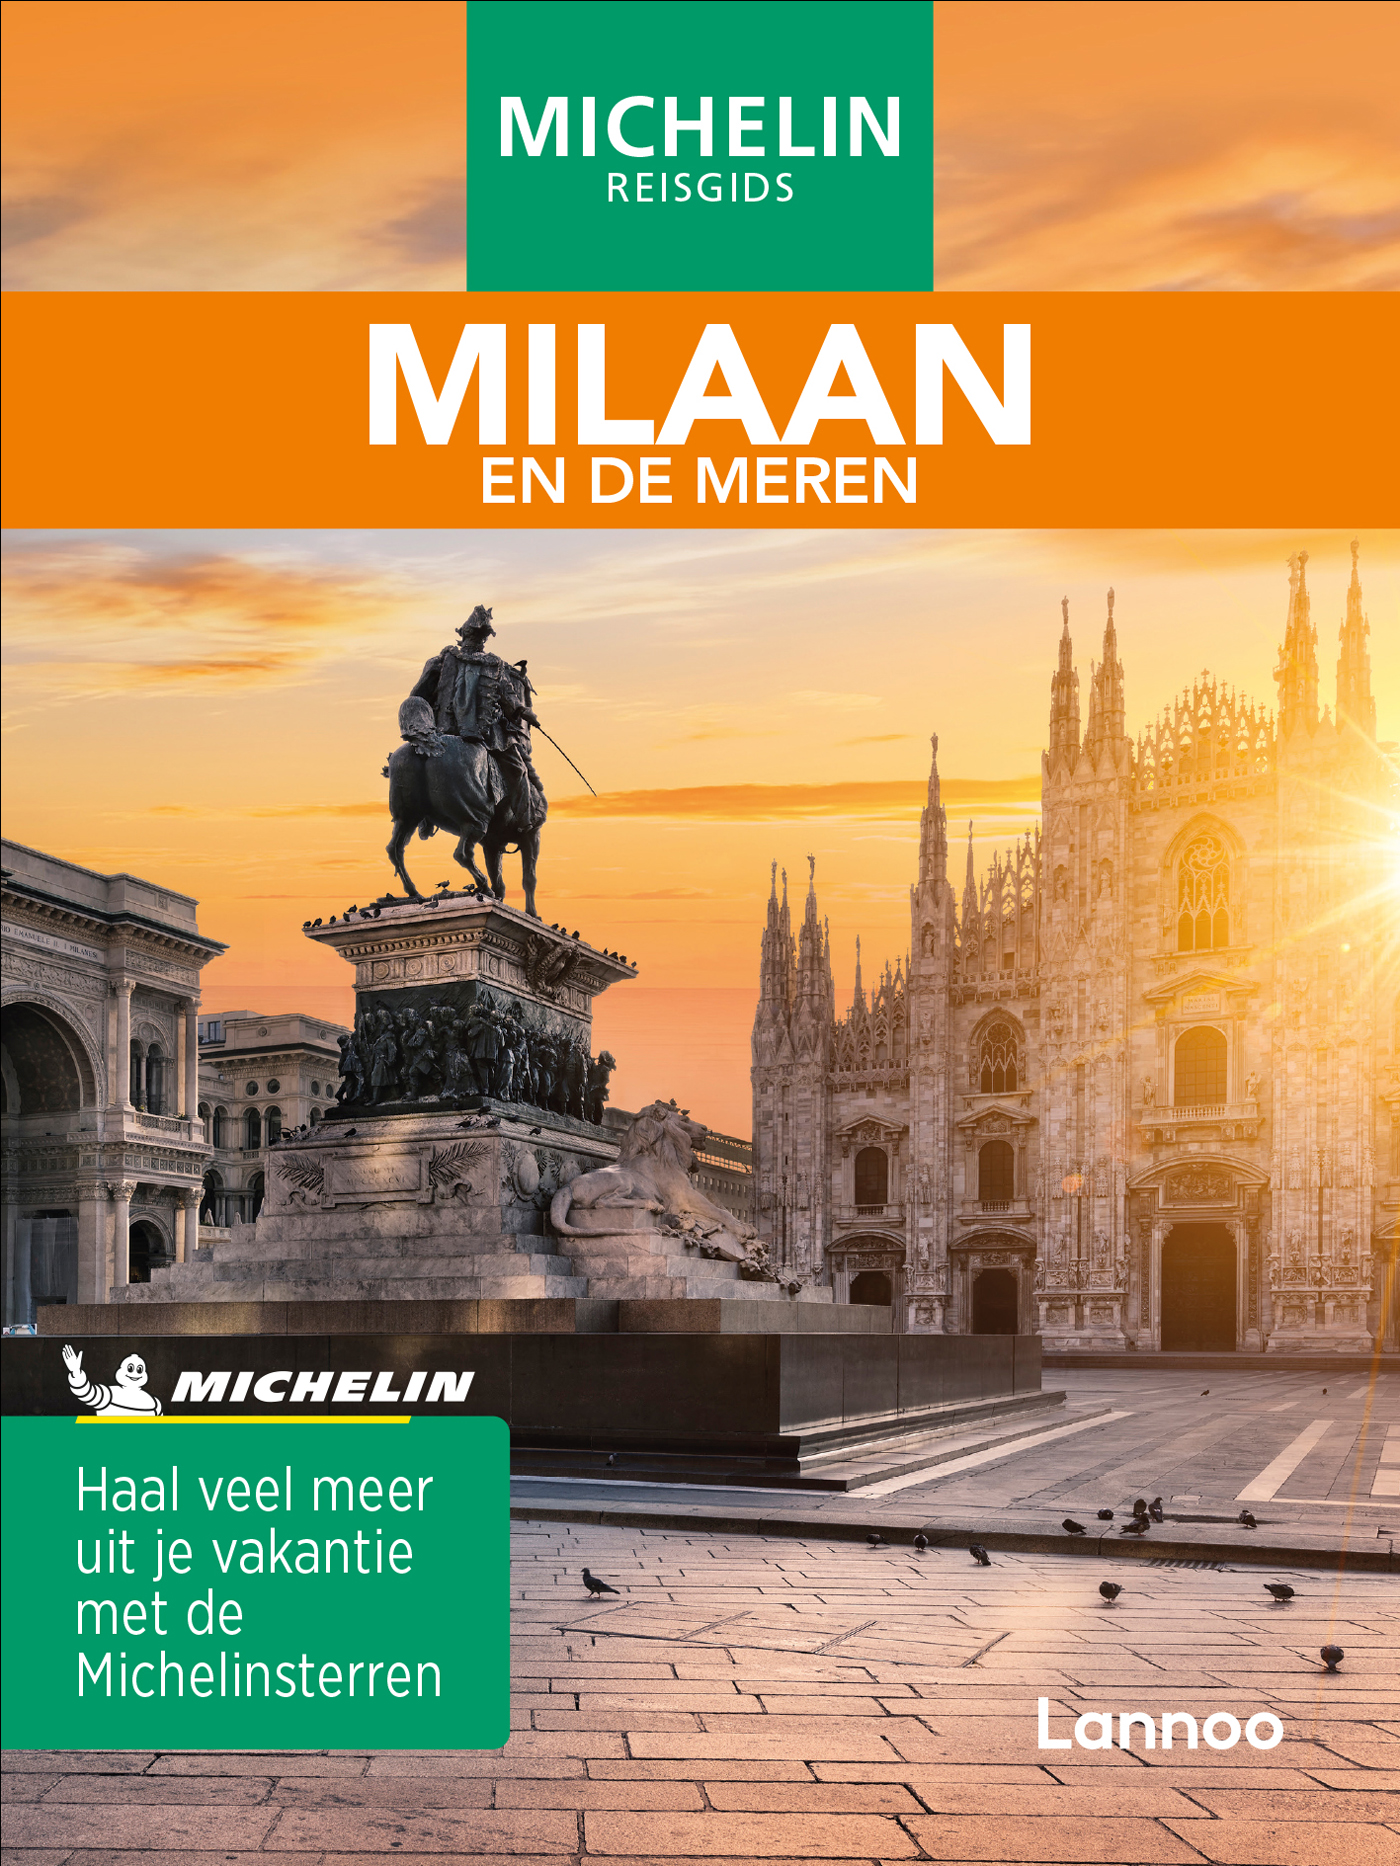 Online bestellen: Reisgids Michelin groene gids Milaan | Lannoo